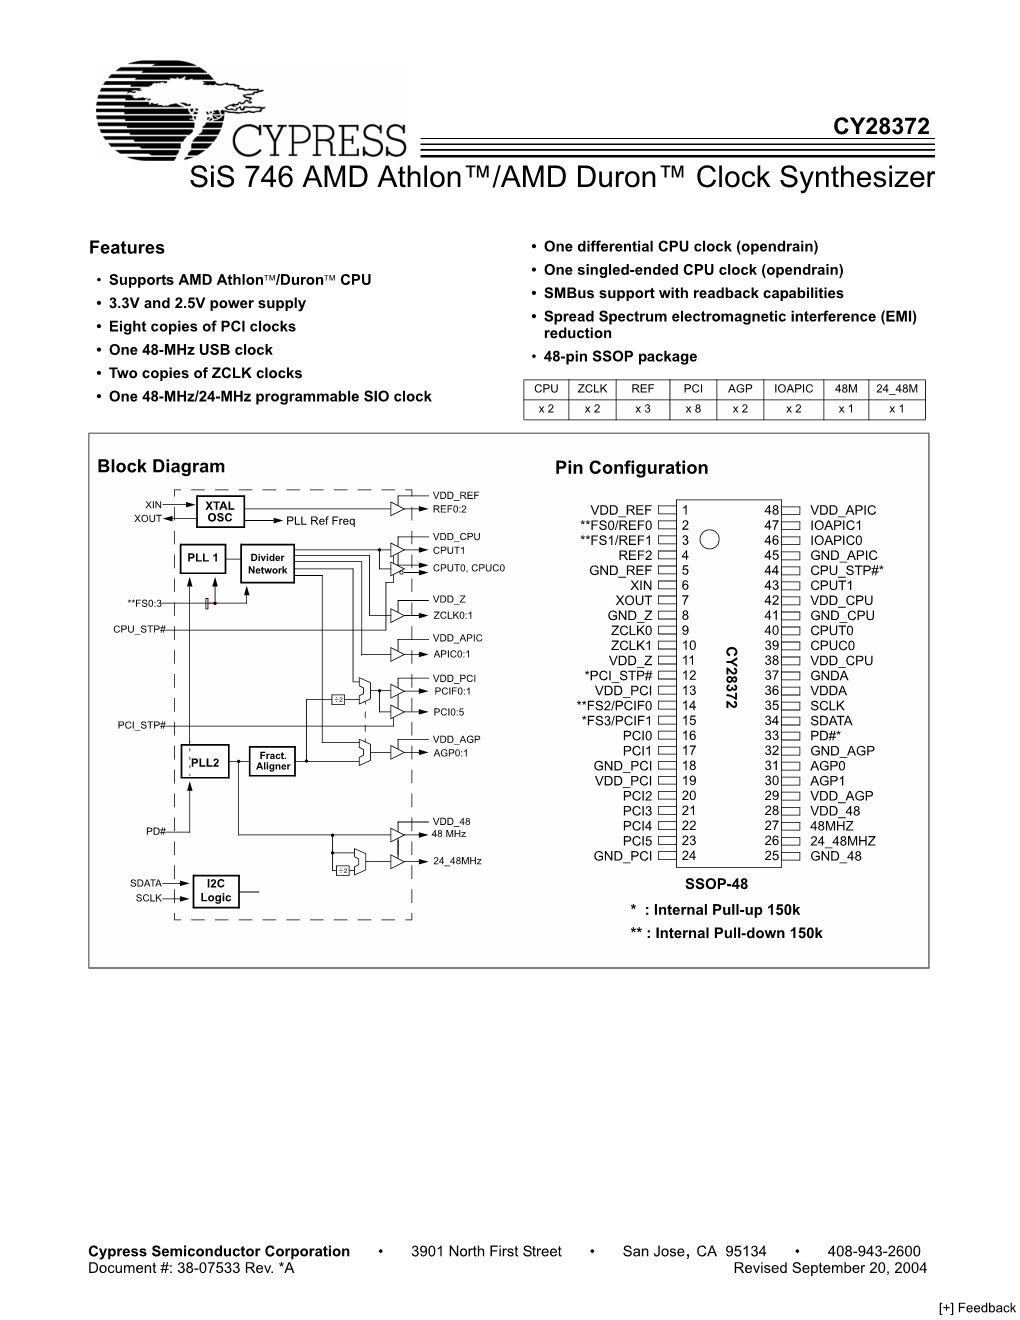 Sis 746 AMD Athlon/AMD Duron Clock Synthesizer,CY28372